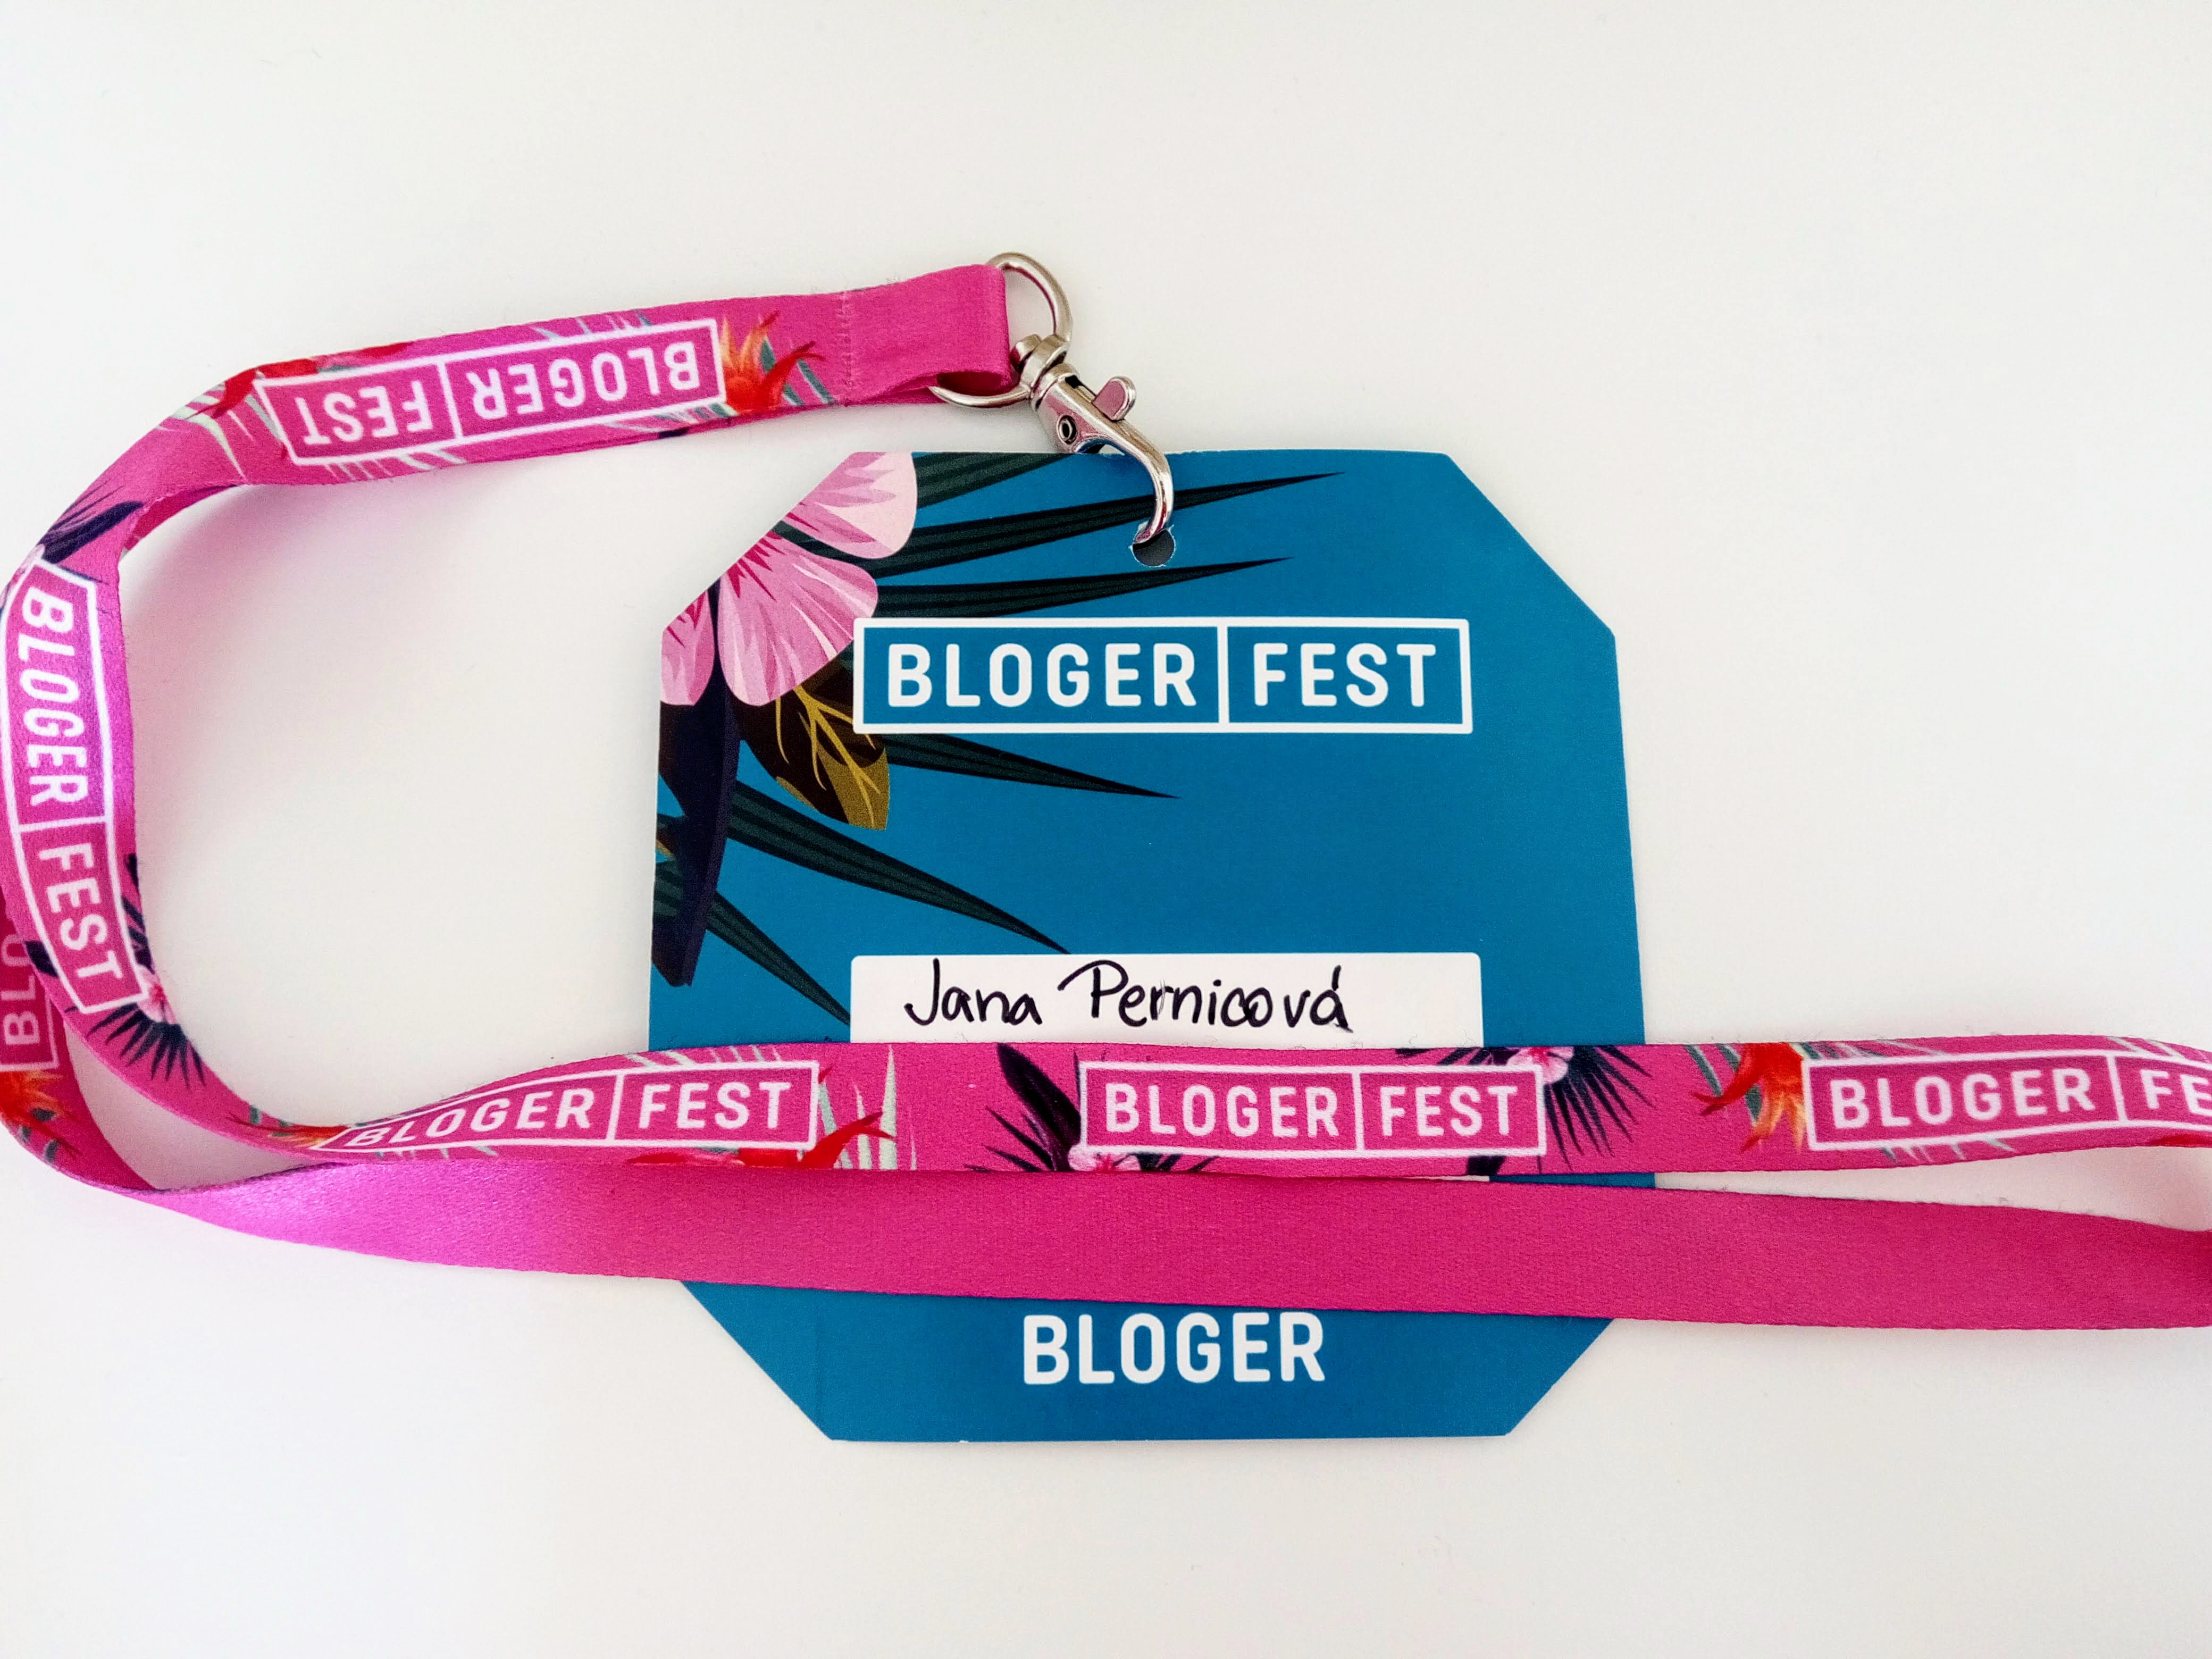 Blogerfest